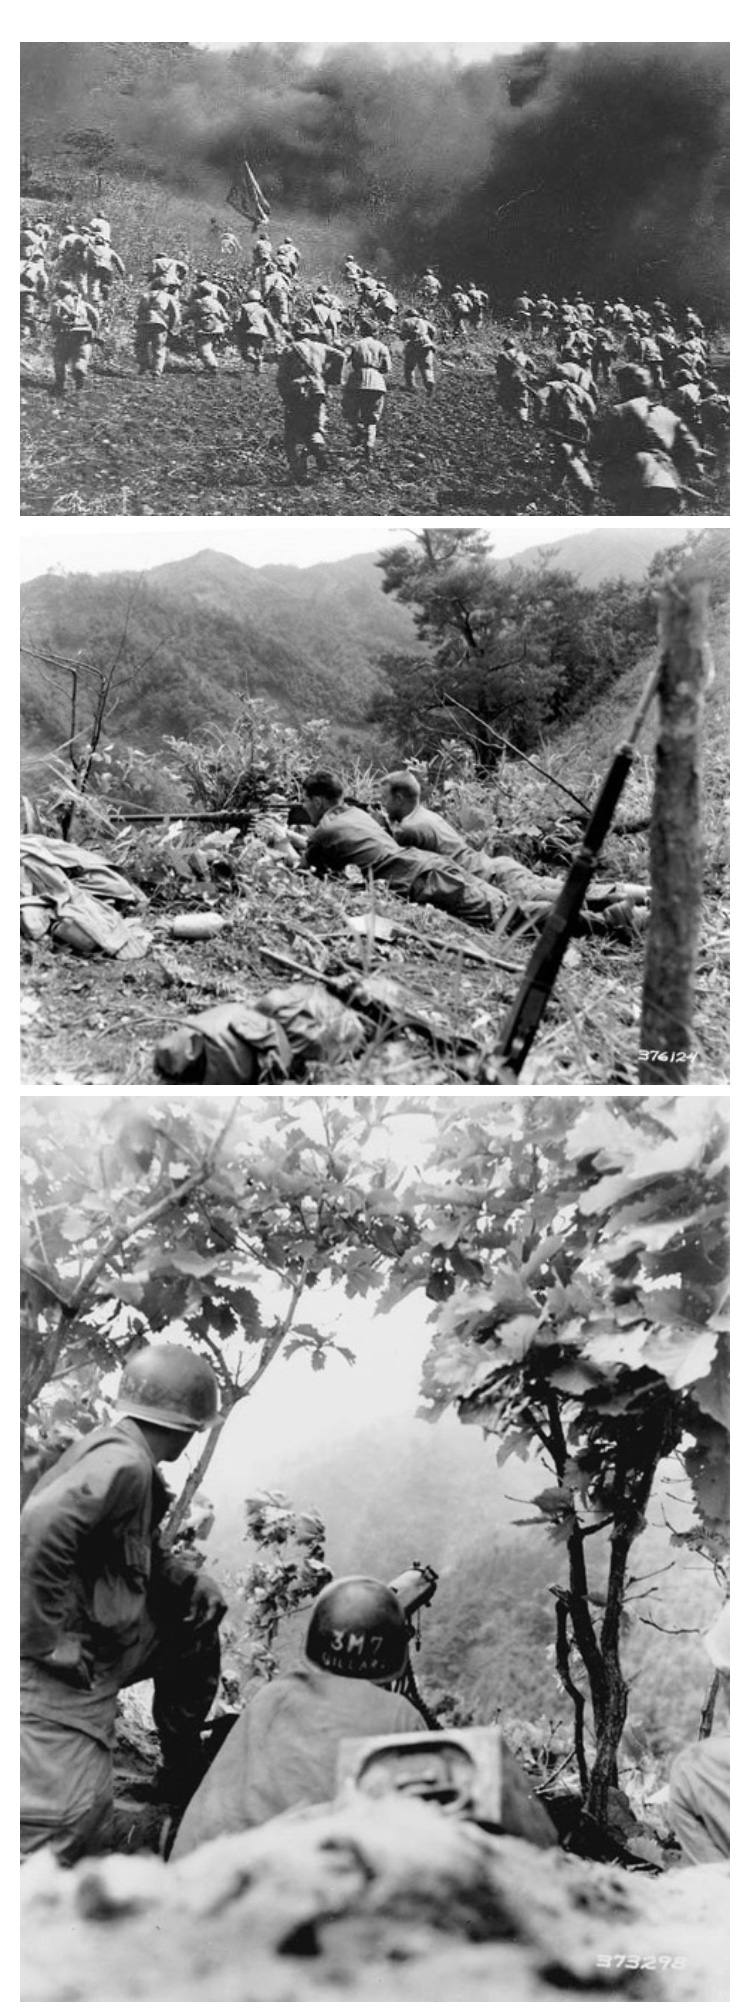 한국전쟁에 참전한 어느 미군의 수기 - 꾸르